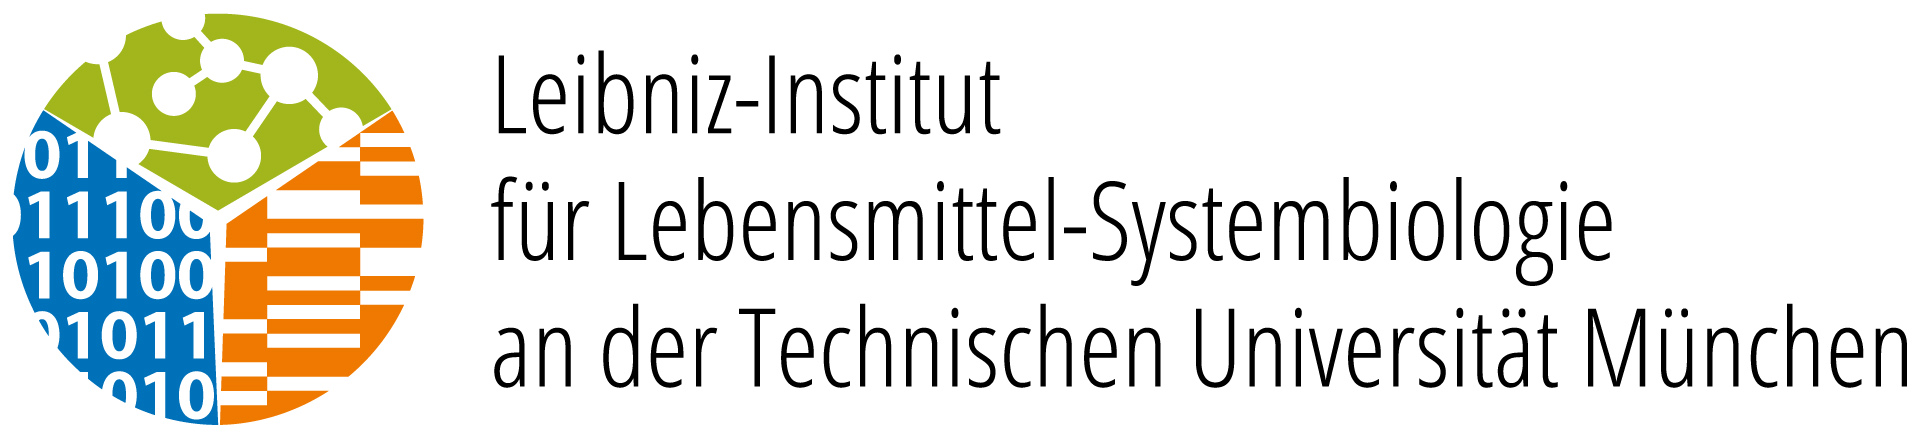 Logo: Leibniz-Institut für Lebensmittel-Systembiologie